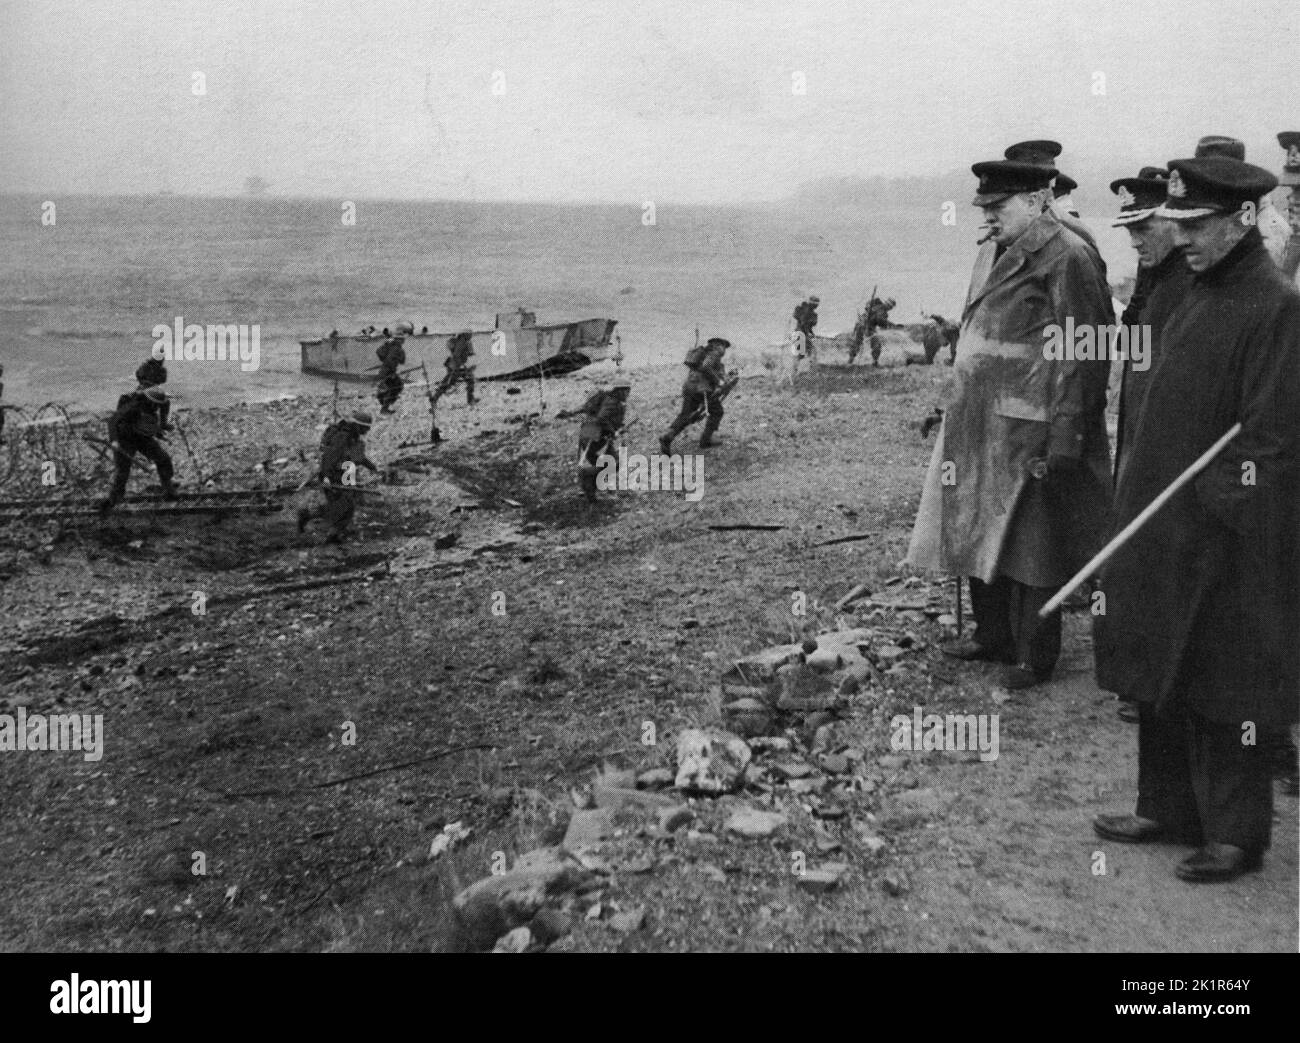 Winston Churchill guardando soldati alleati in un esercizio di atterraggio sulla spiaggia, prima del D-Day. 1944 Foto Stock